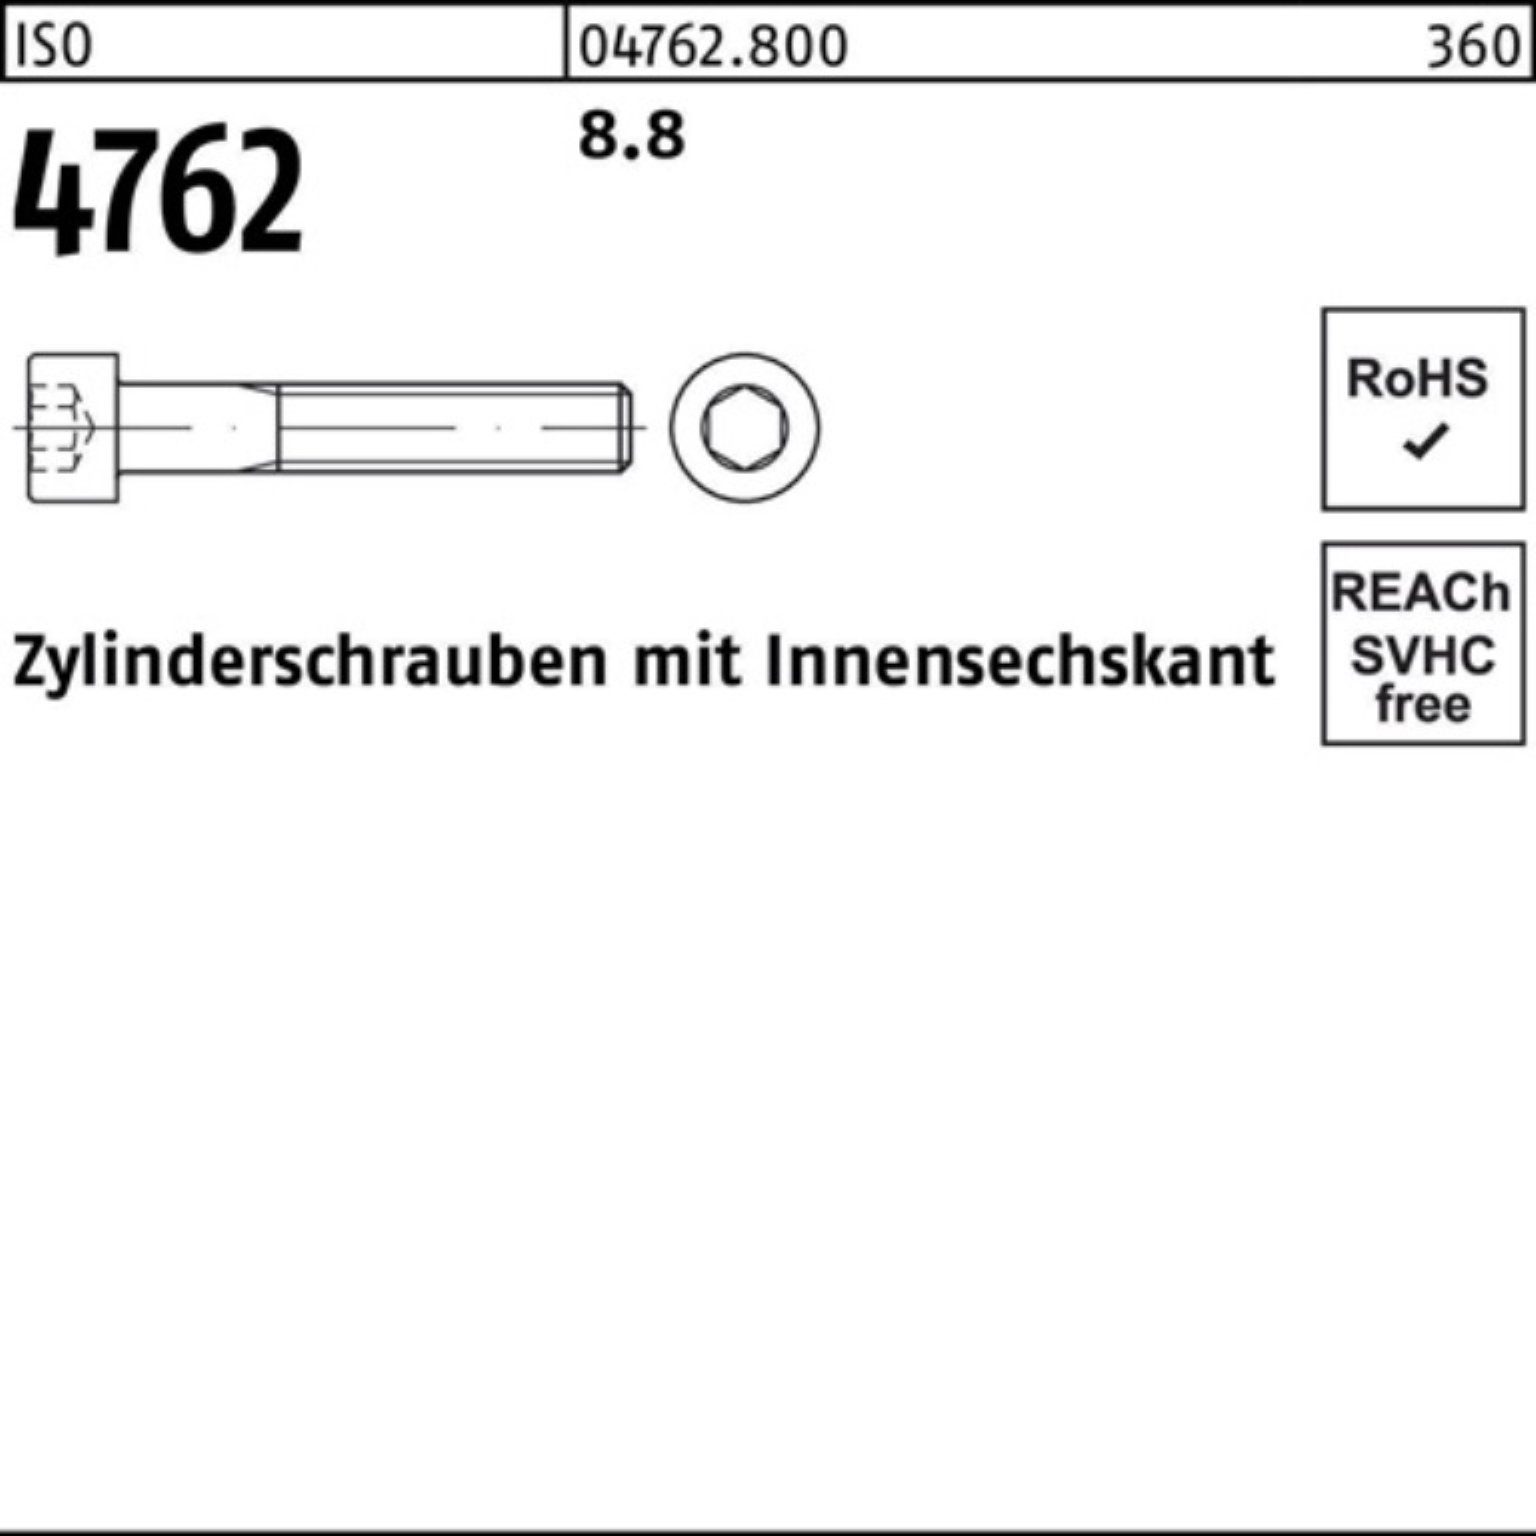 Reyher M27x 4762 100er ISO I Zylinderschraube 8.8 Stück Pack Zylinderschraube 1 Innen-6kt 180